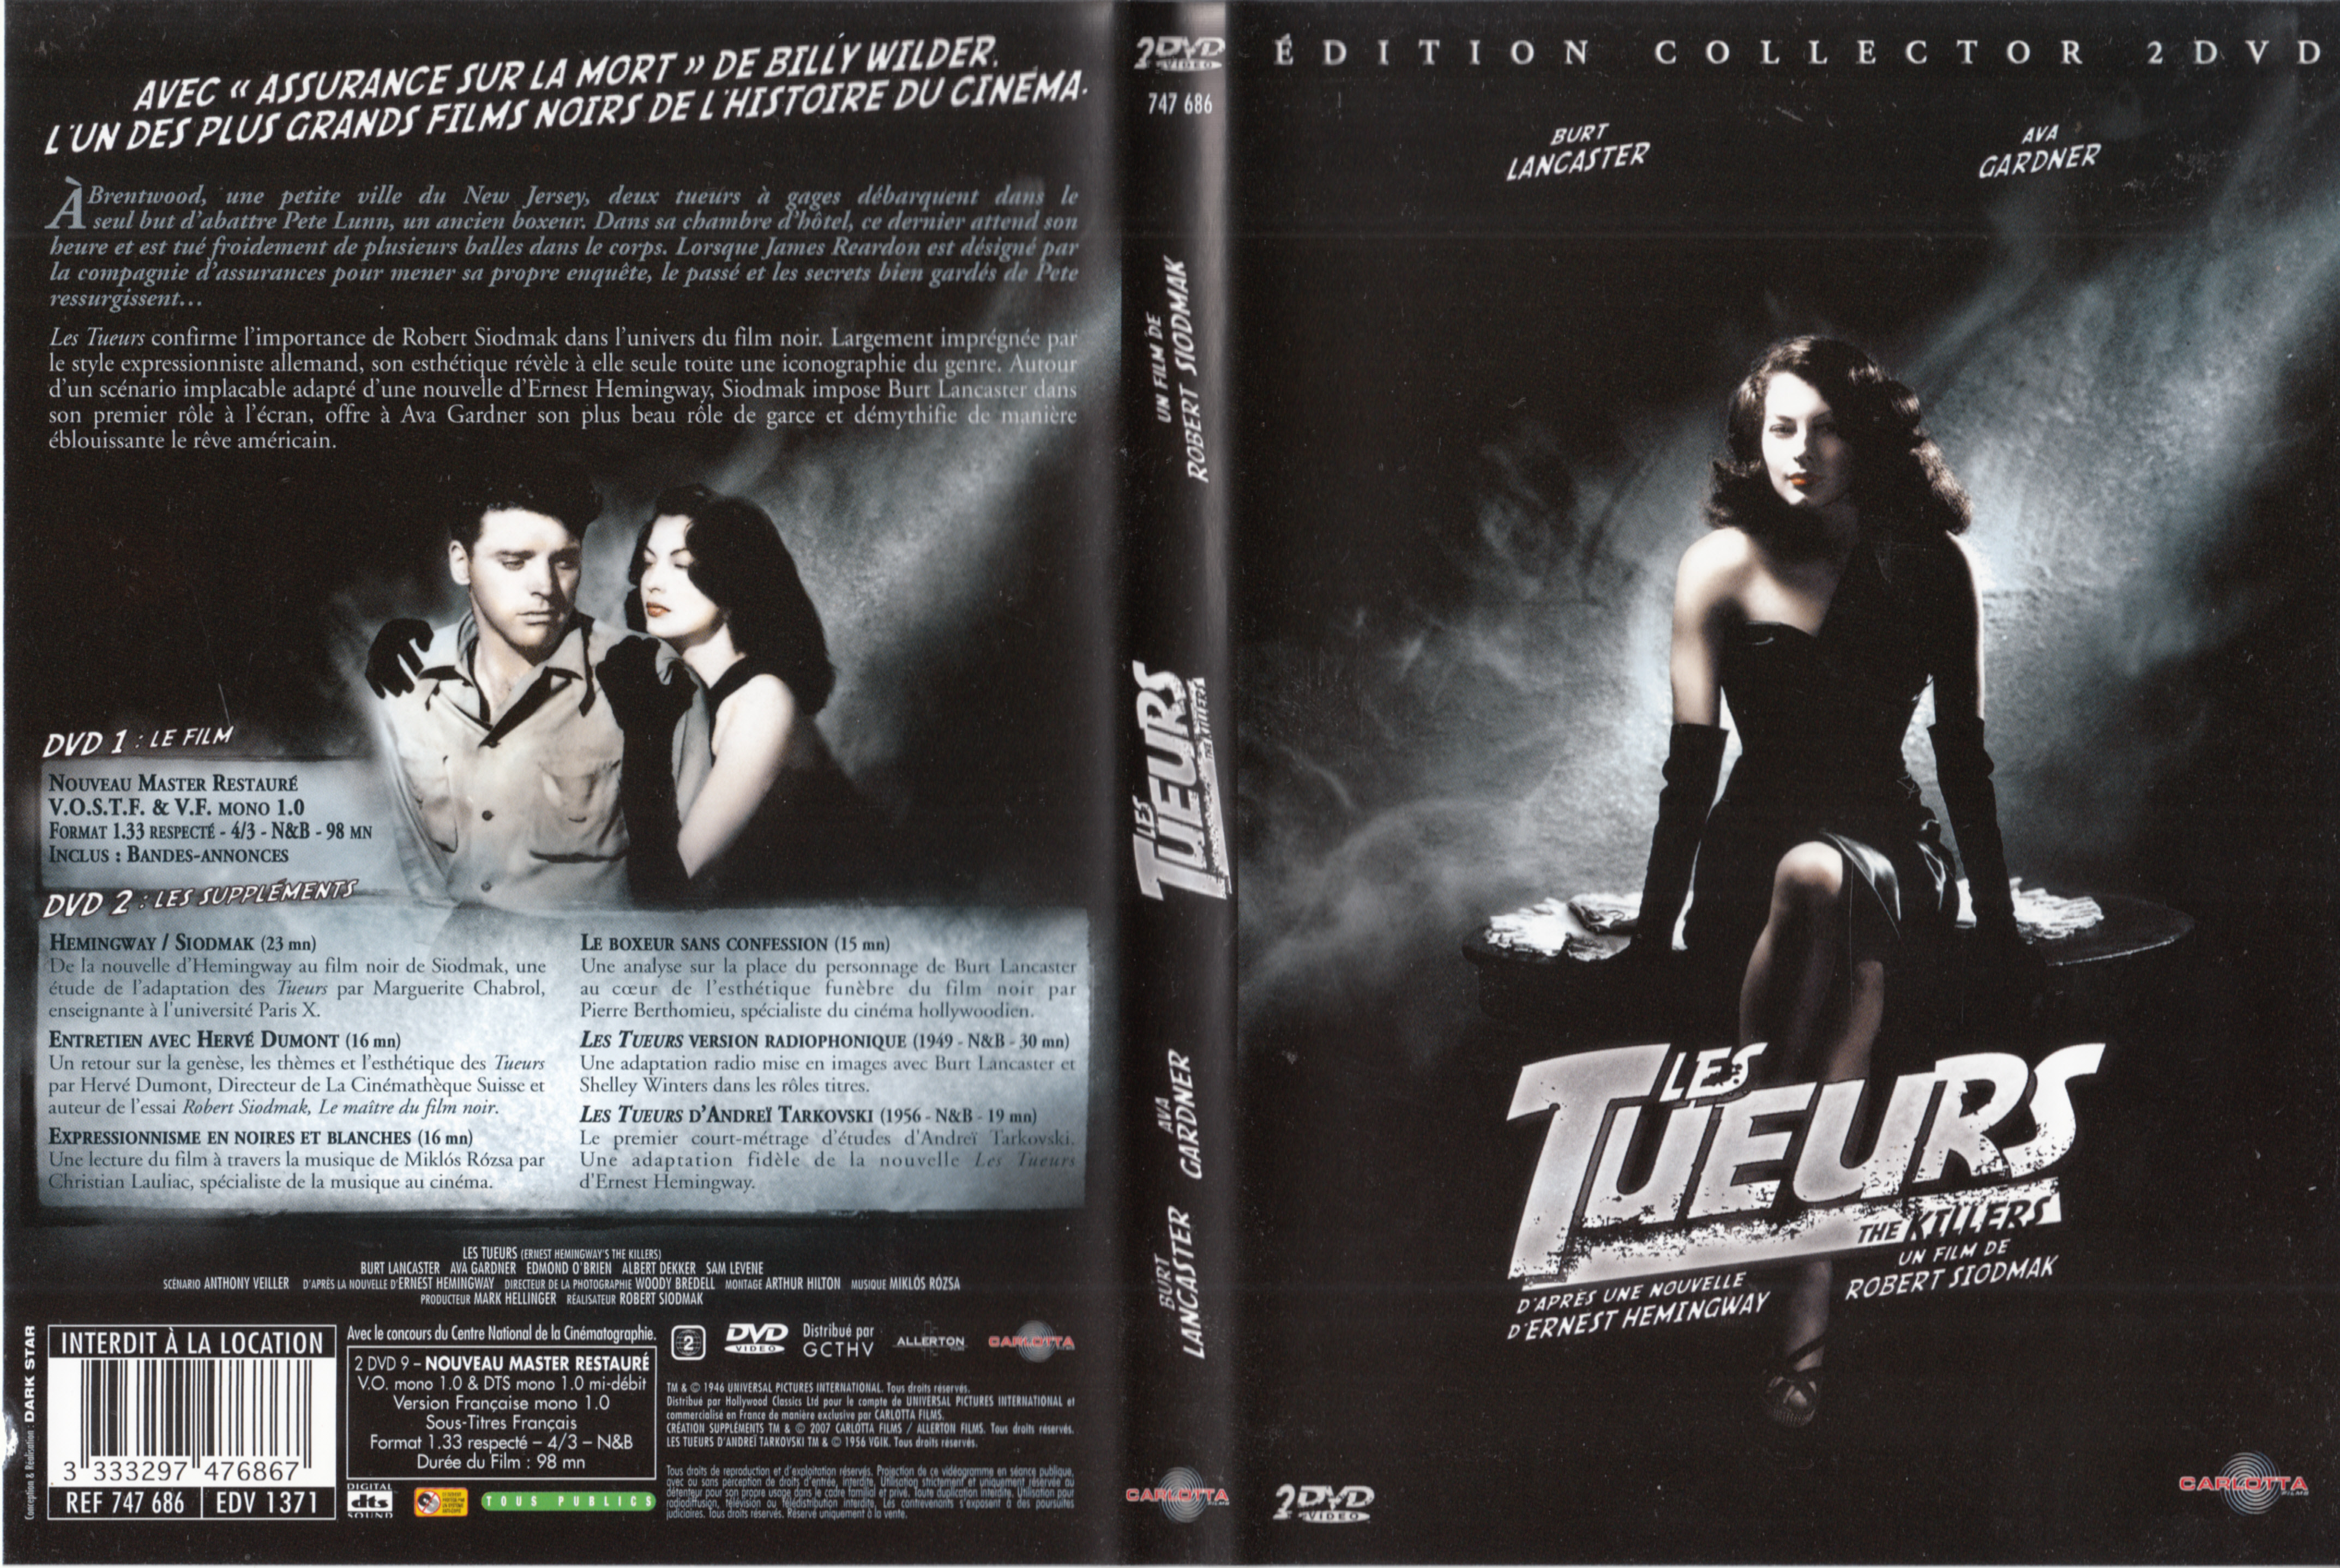 Jaquette DVD Les Tueurs v2